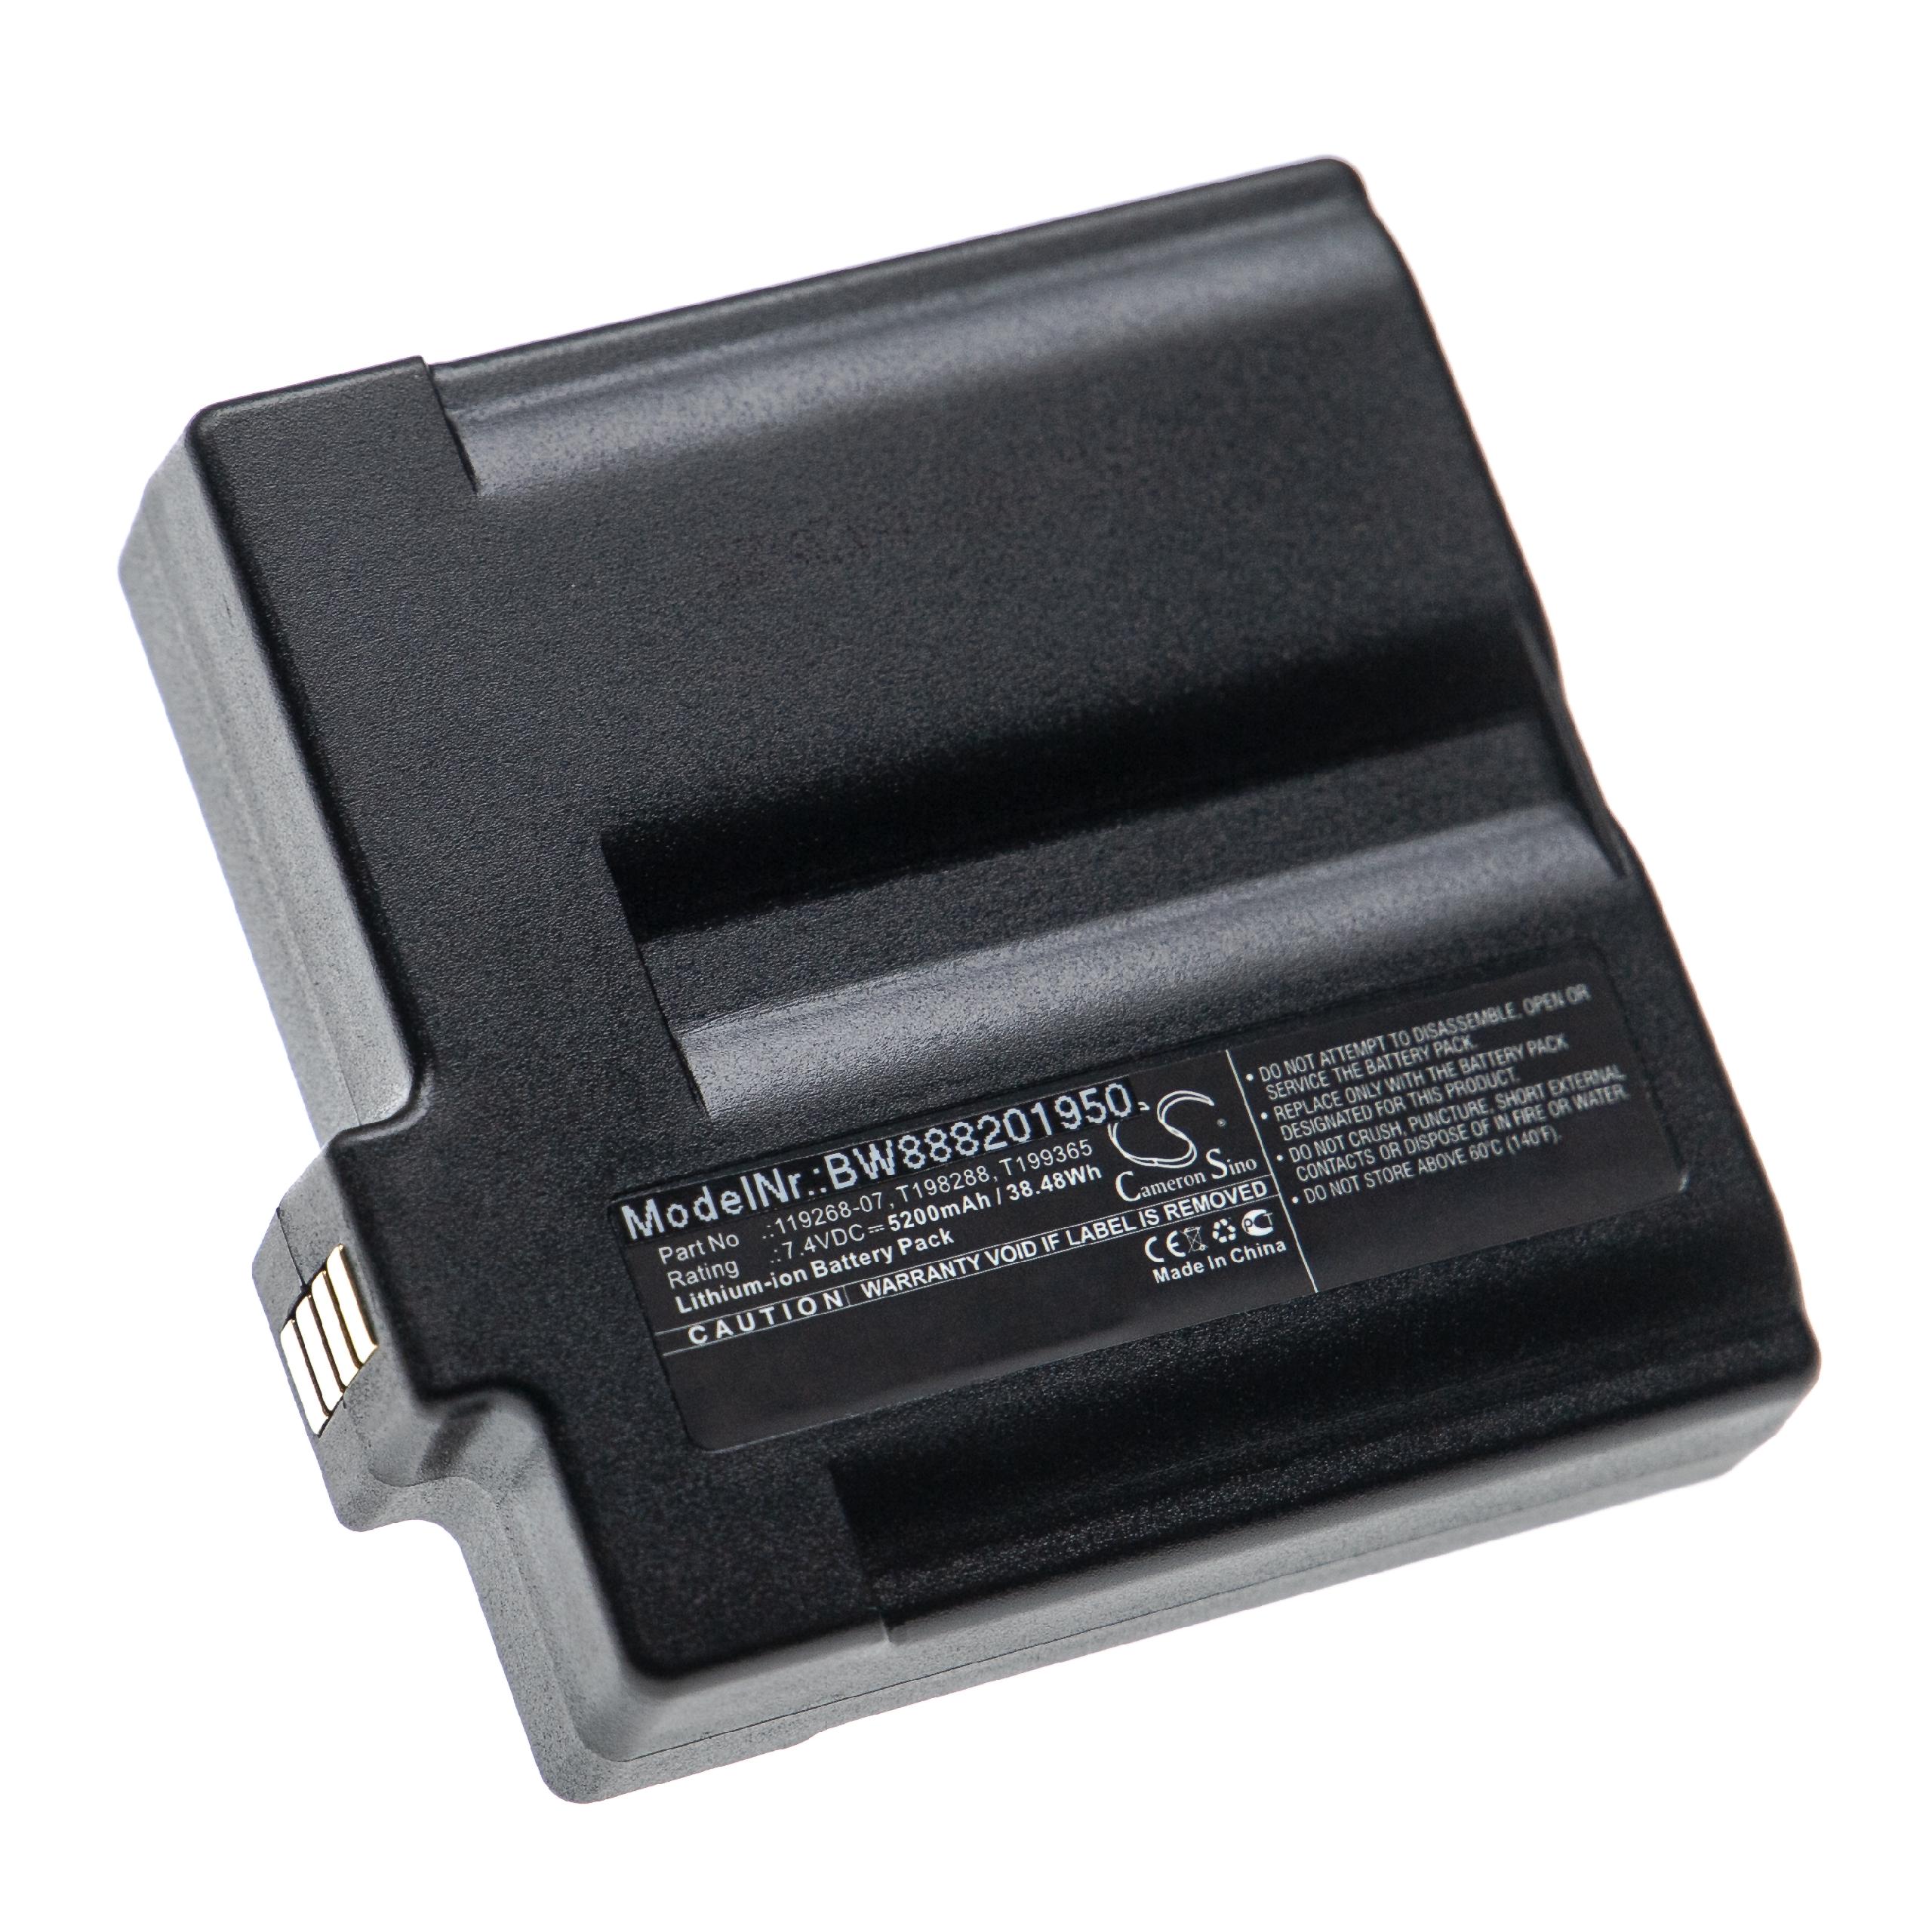 Akumulator do kamery termowizyjnej / termowizora zamiennik Flir 119268-07, 1195268-02 - 5200 mAh 7,4 V Li-Ion